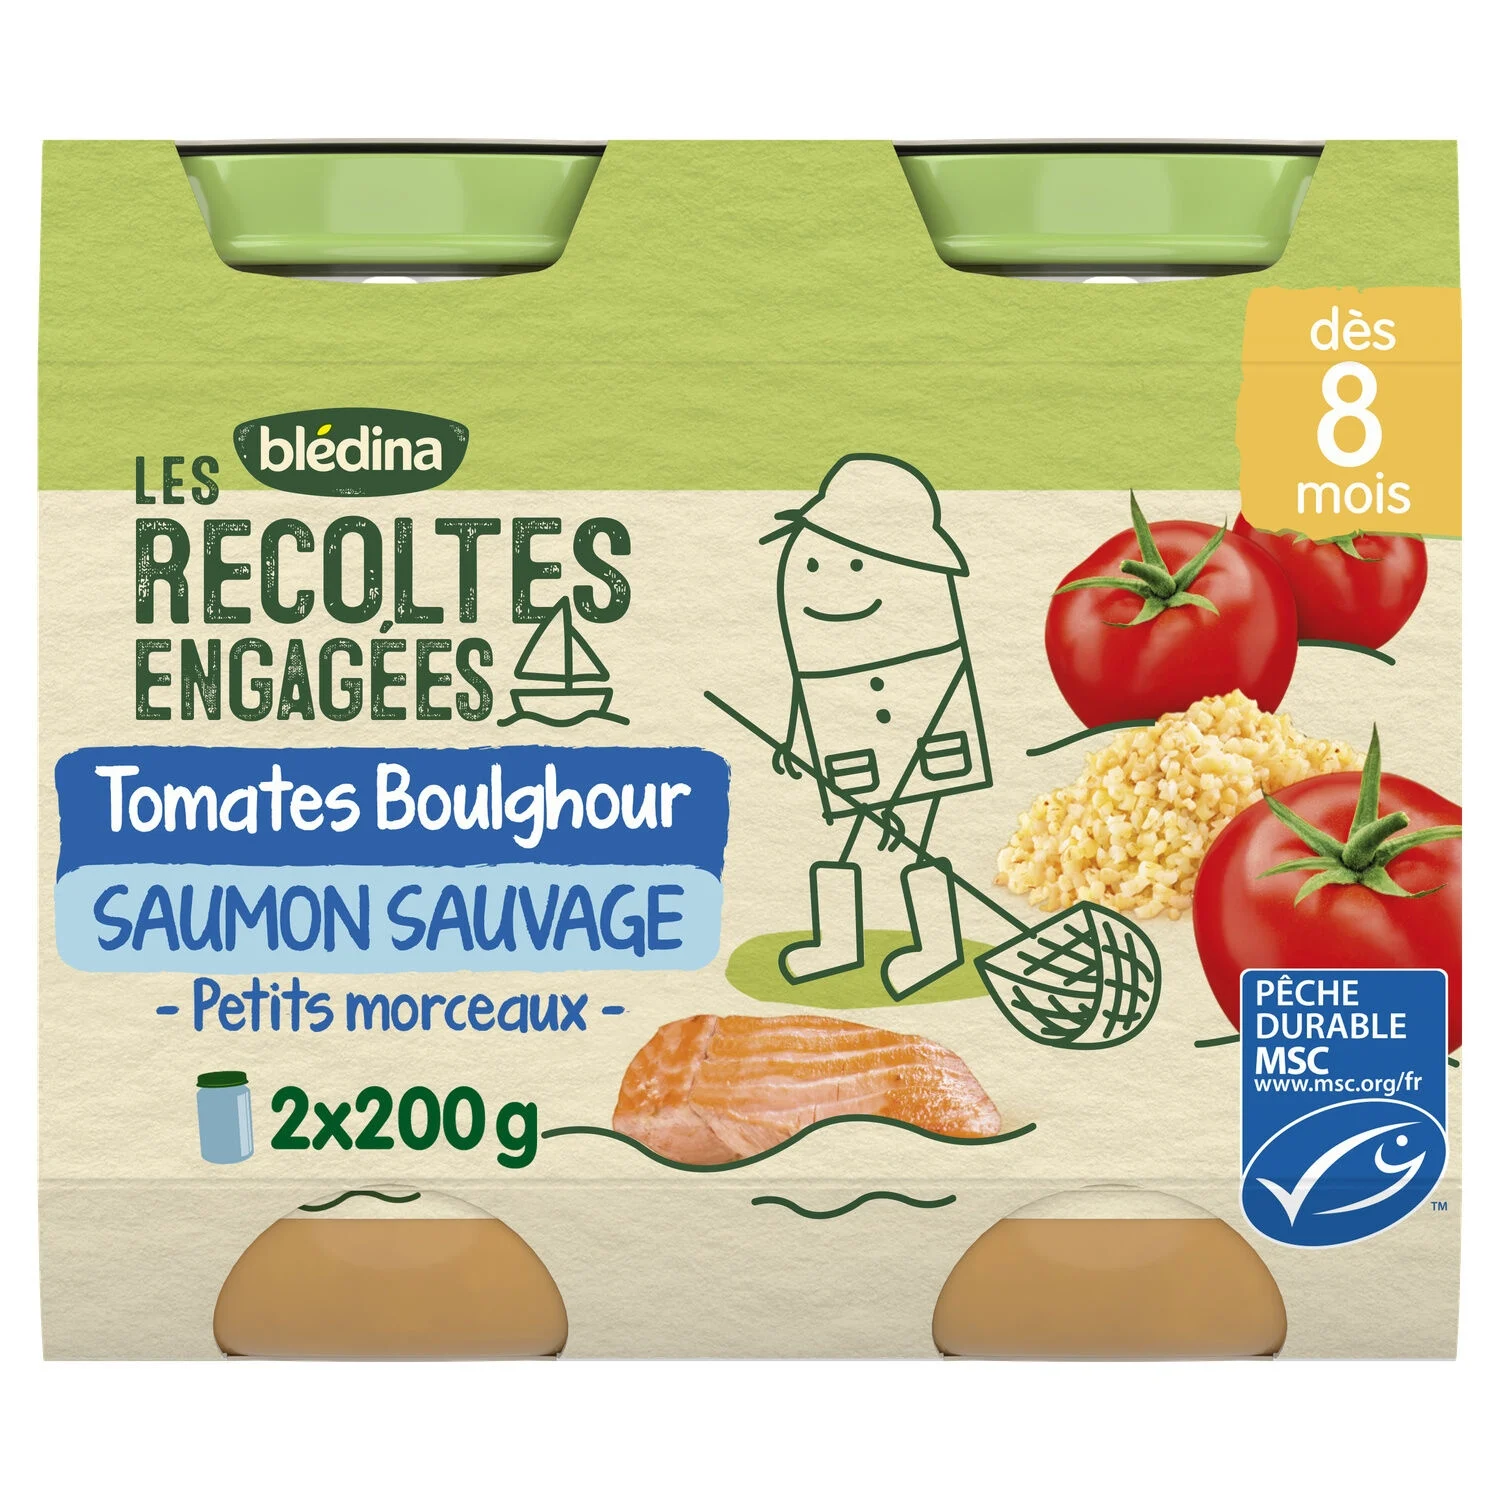 Petit pot bébé dès 8 mois tomates boulghour saumon Les Récoltes Engagées 2x200g - BLEDINA